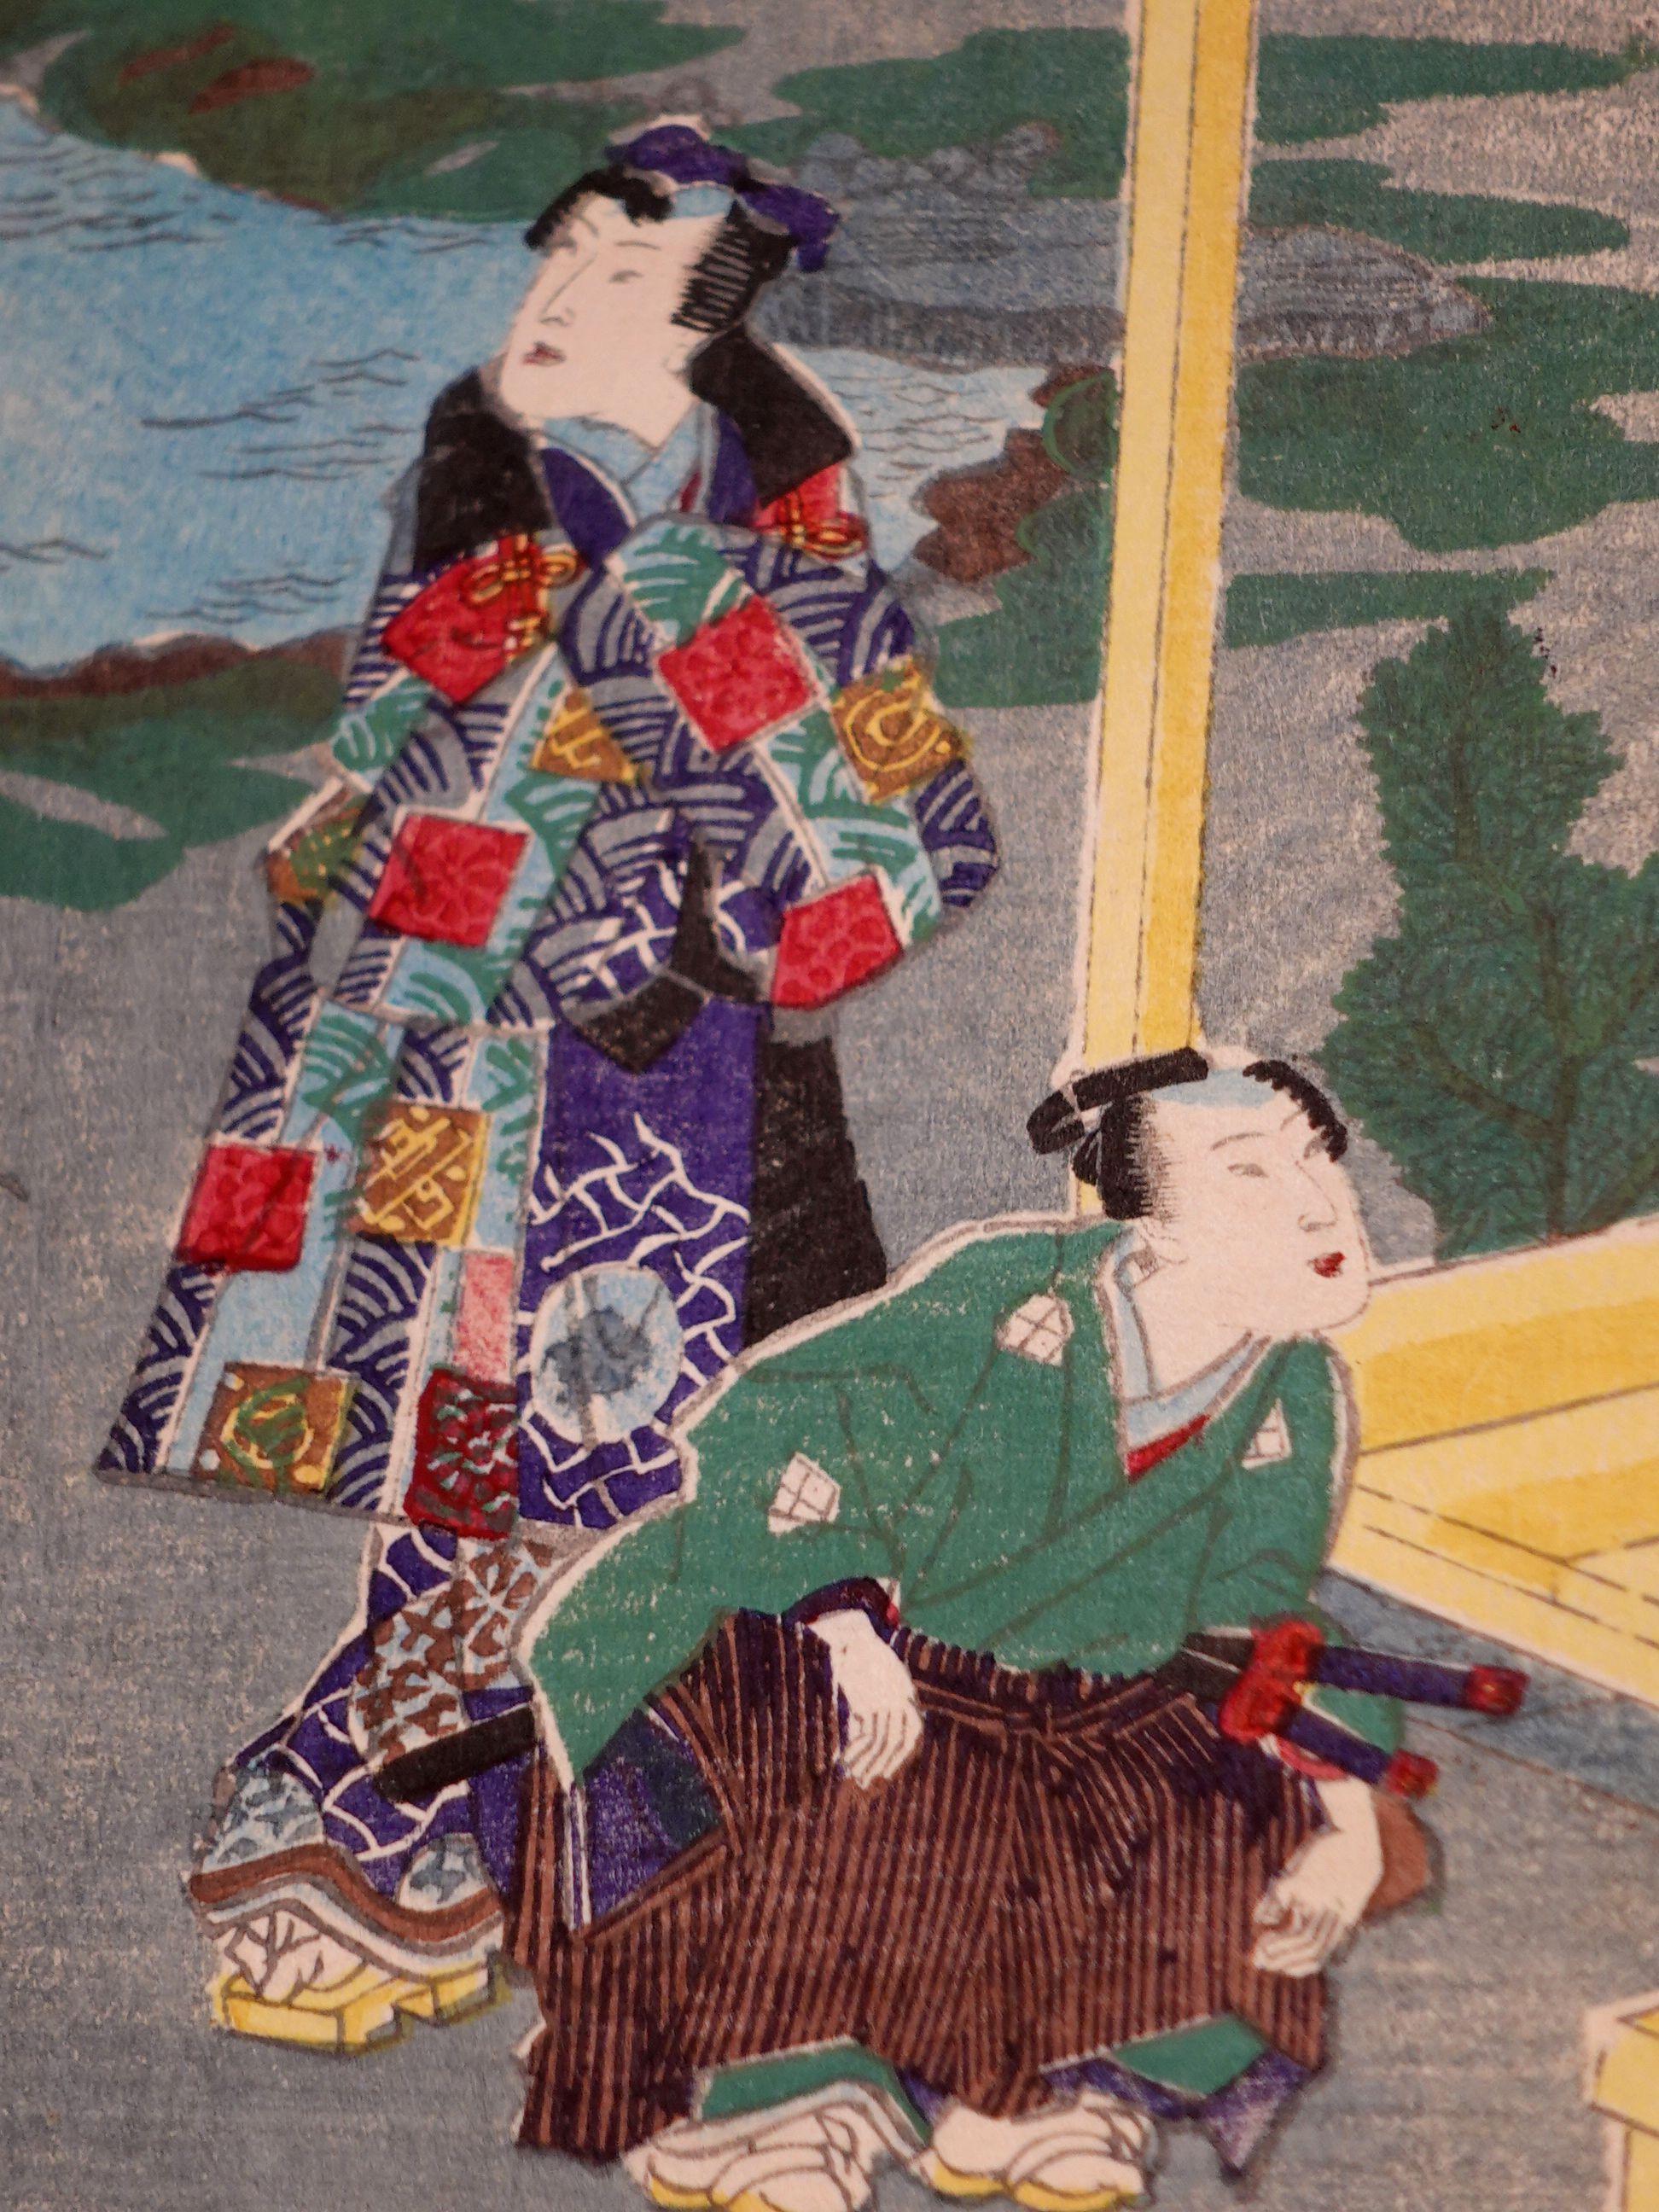 Utagawa Yoshiiku 落合芳幾 20 Woodblock Prints in Album 